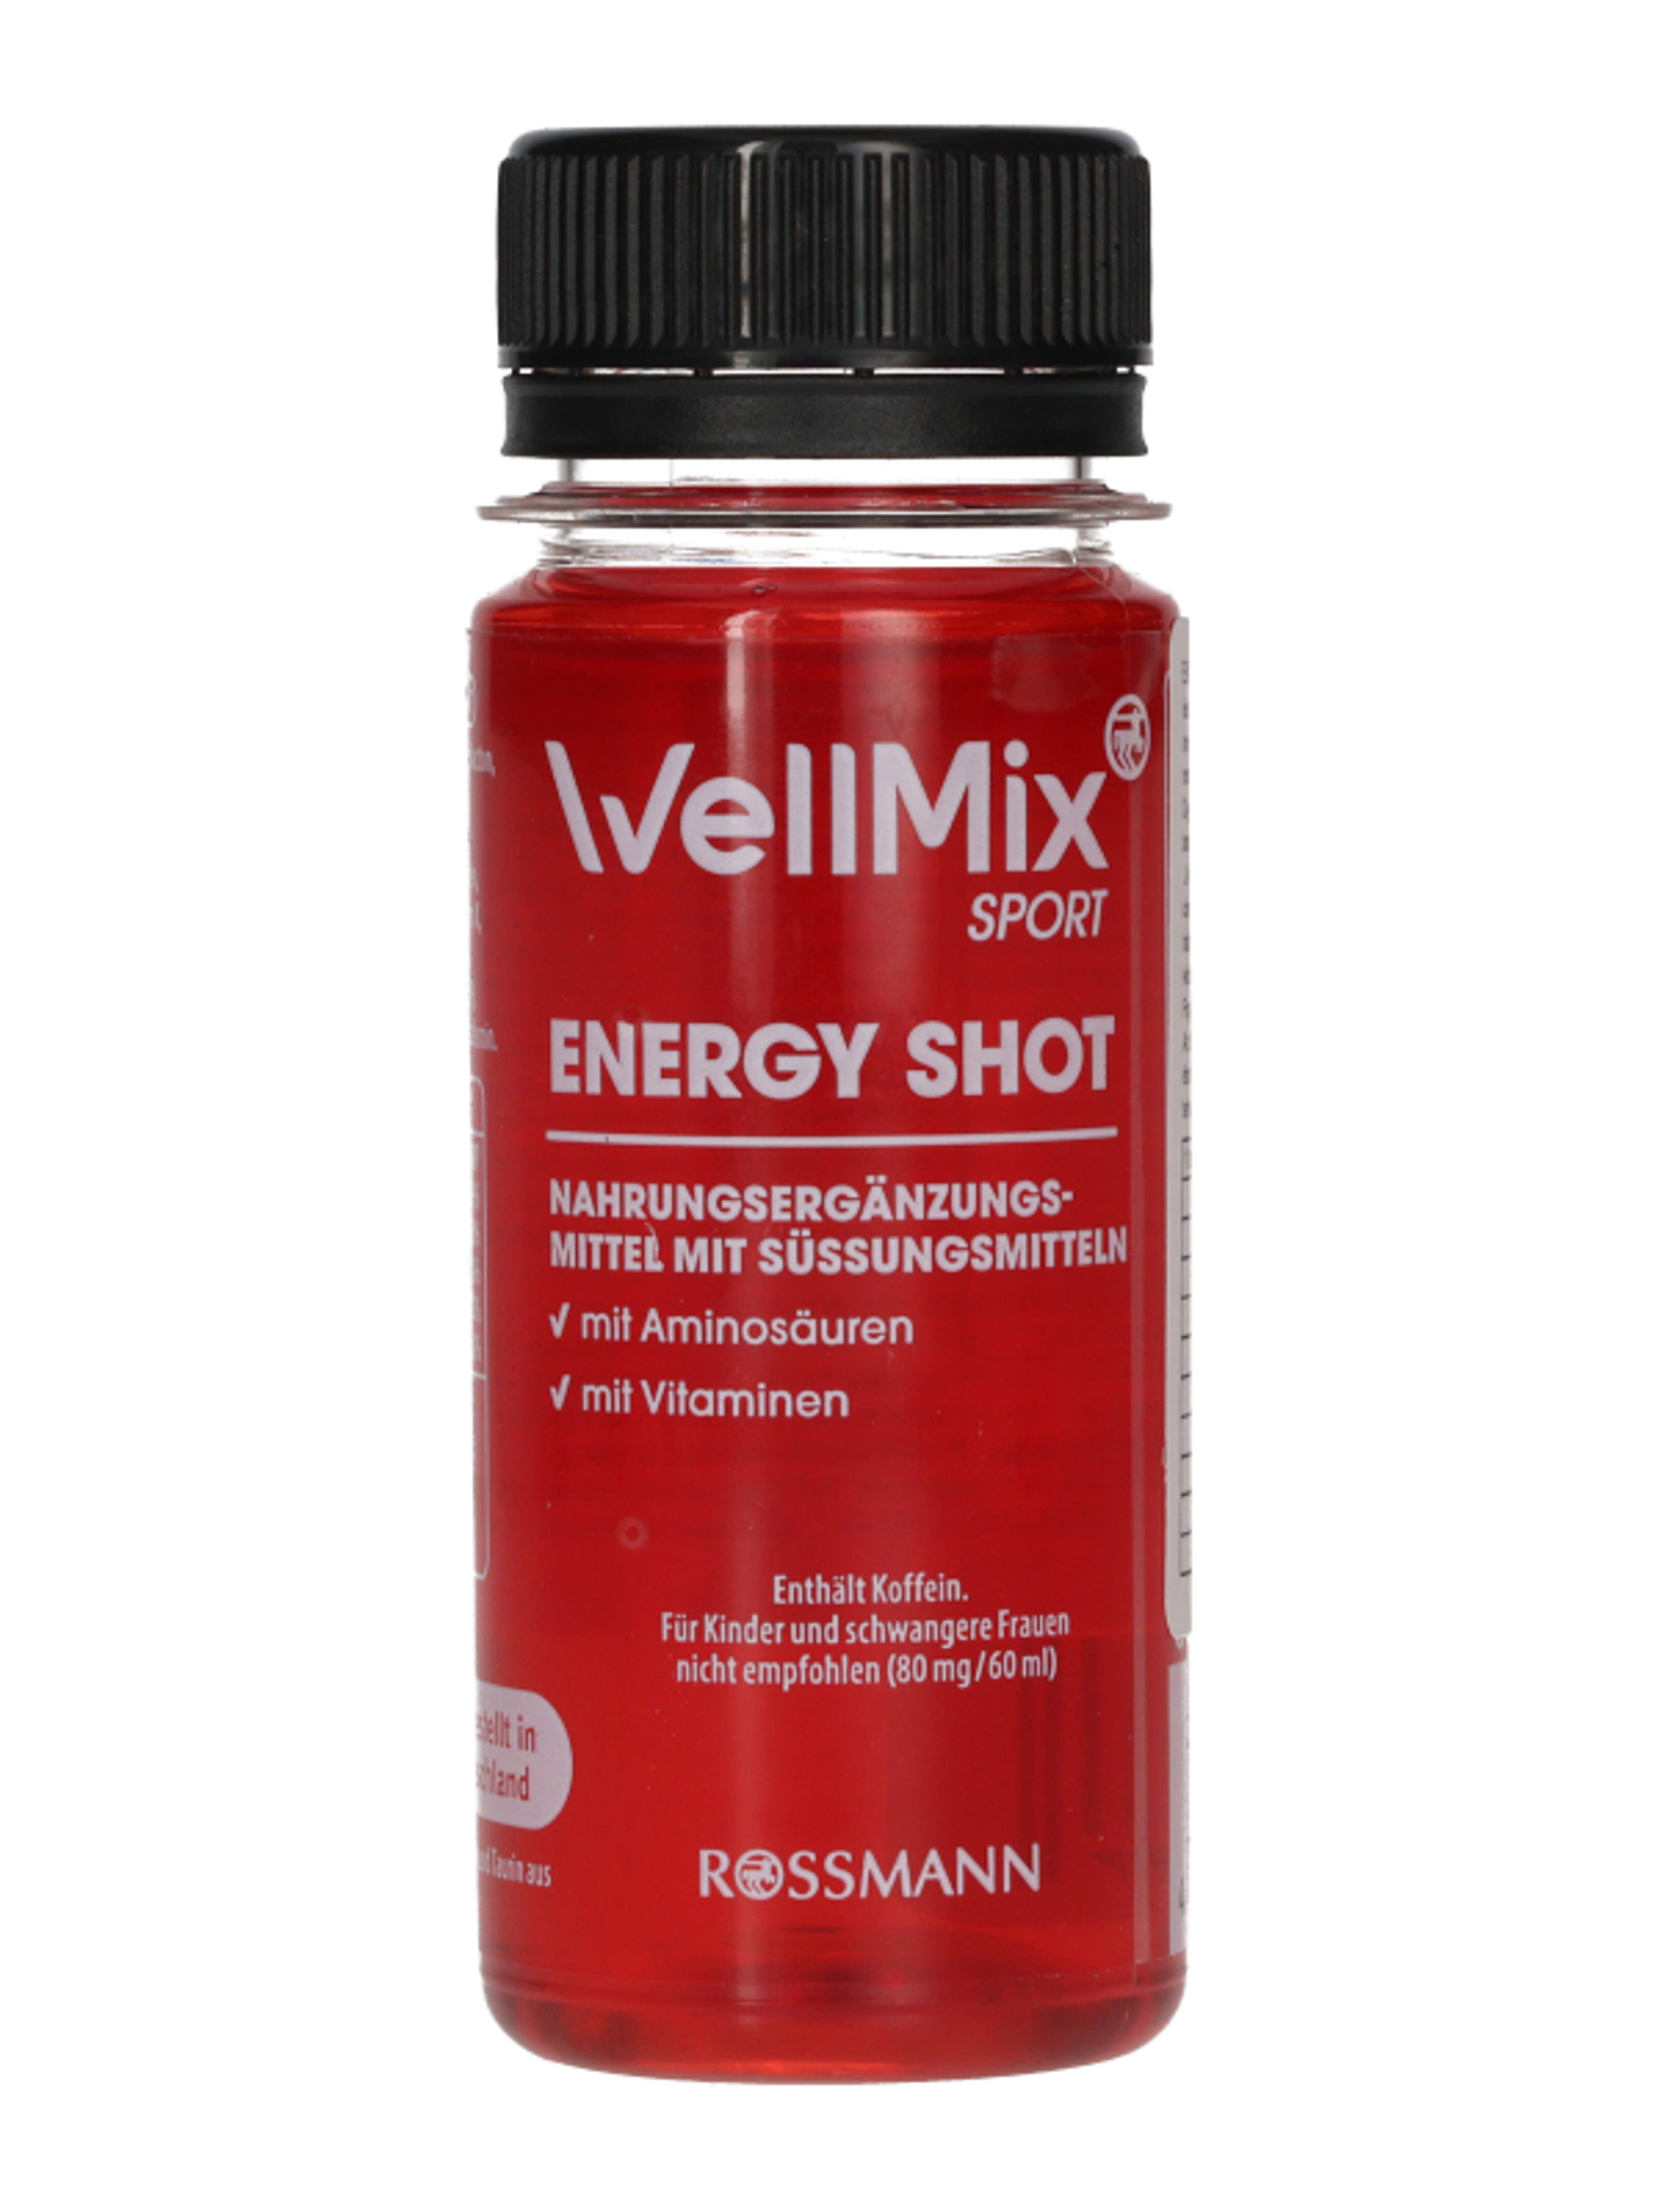 Well Mix Energy Shot - 60 ml